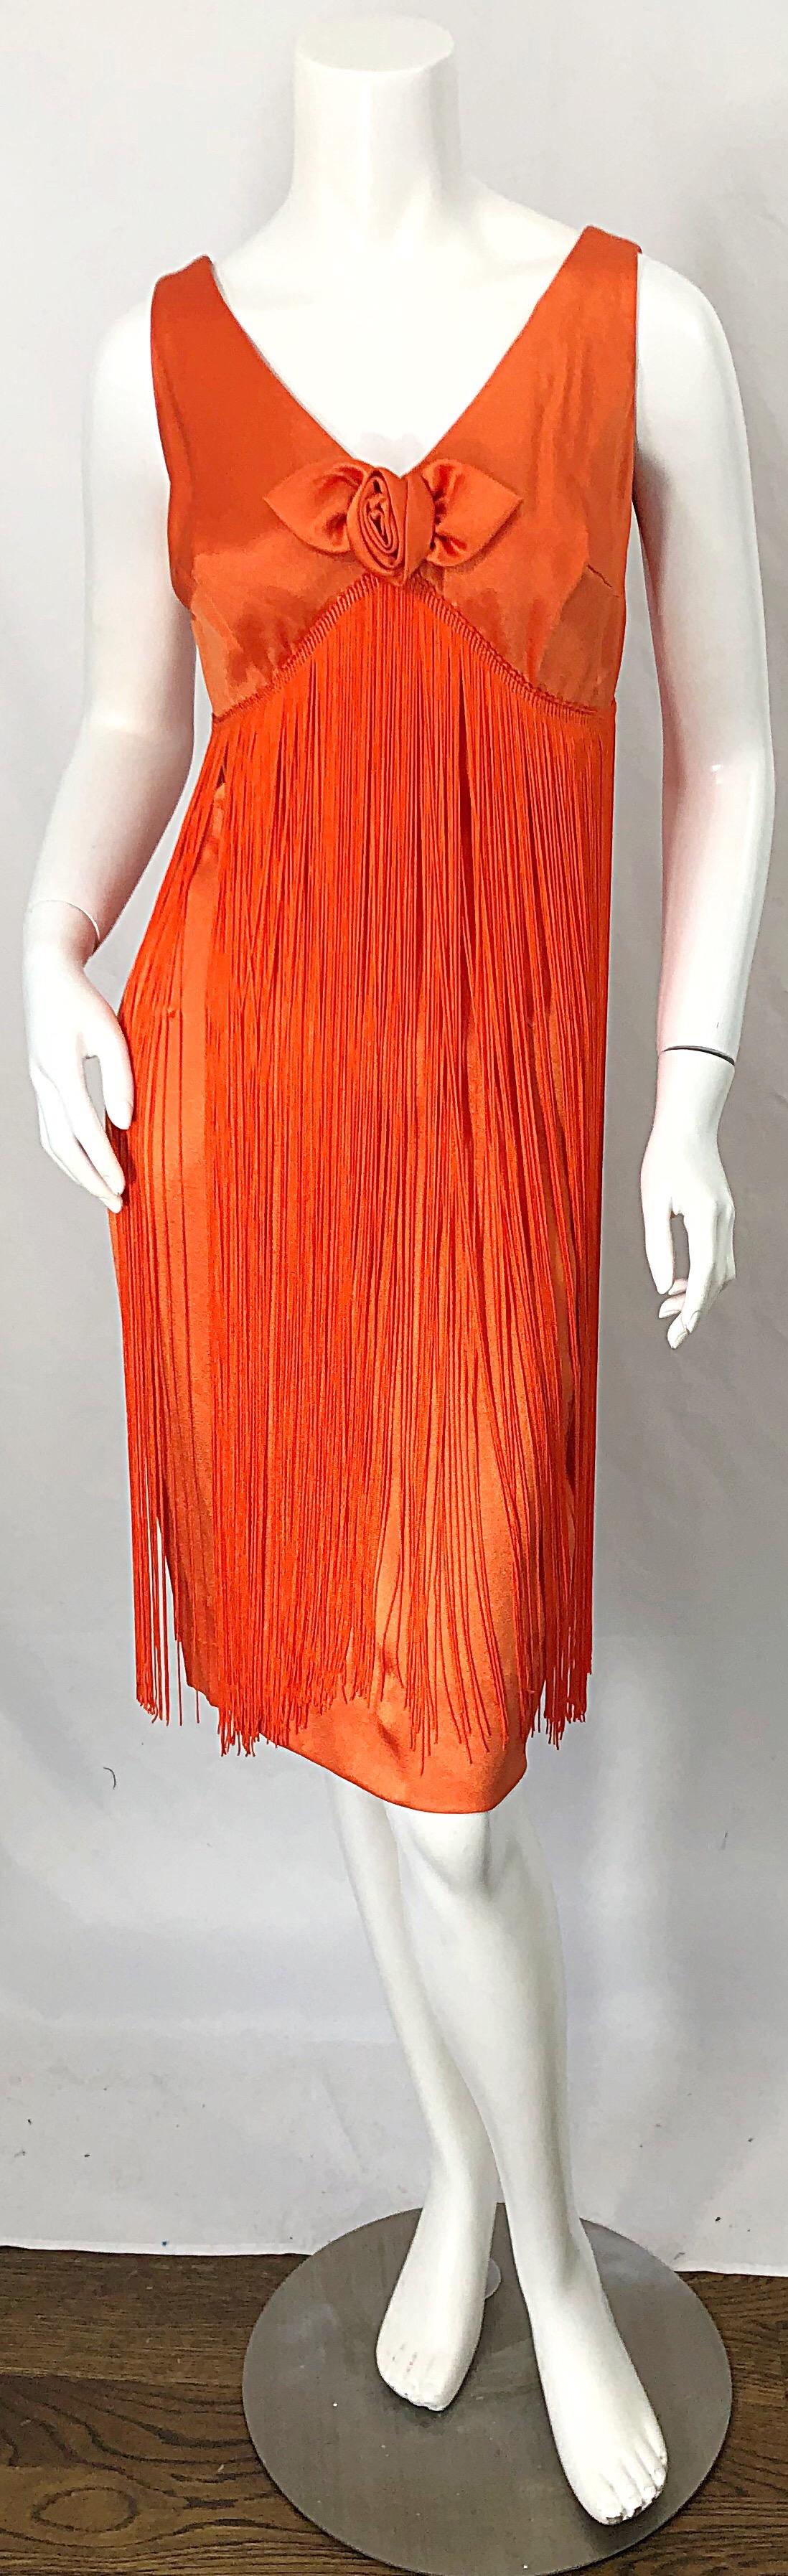 Vintage 1960 JOSEPH MAGNIN robe de flapper orange fluo entièrement frangée ! La robe est d'une couleur orange parfaite, avec des centaines de fils de franges sur toute la longueur. Fermeture à glissière en métal cachée dans le dos avec fermeture